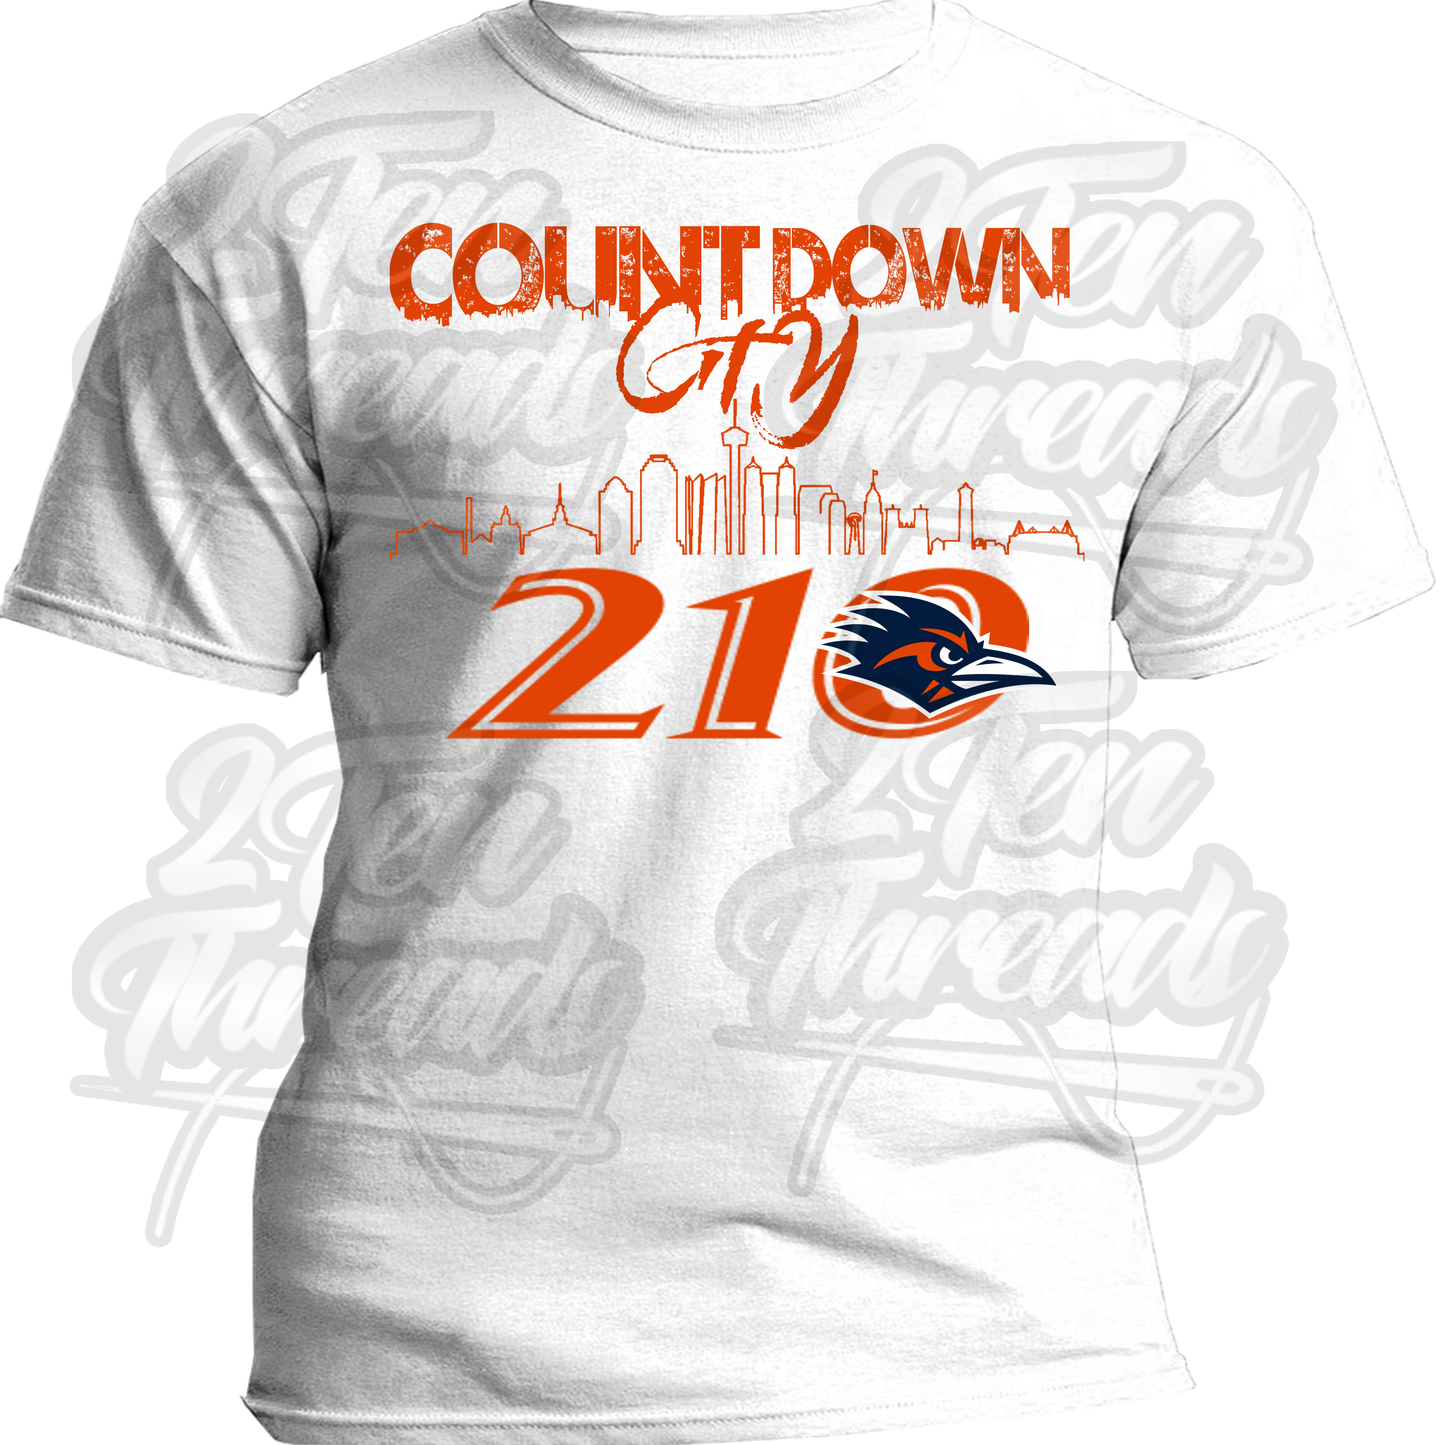 CountDown City UTSA Shirt!